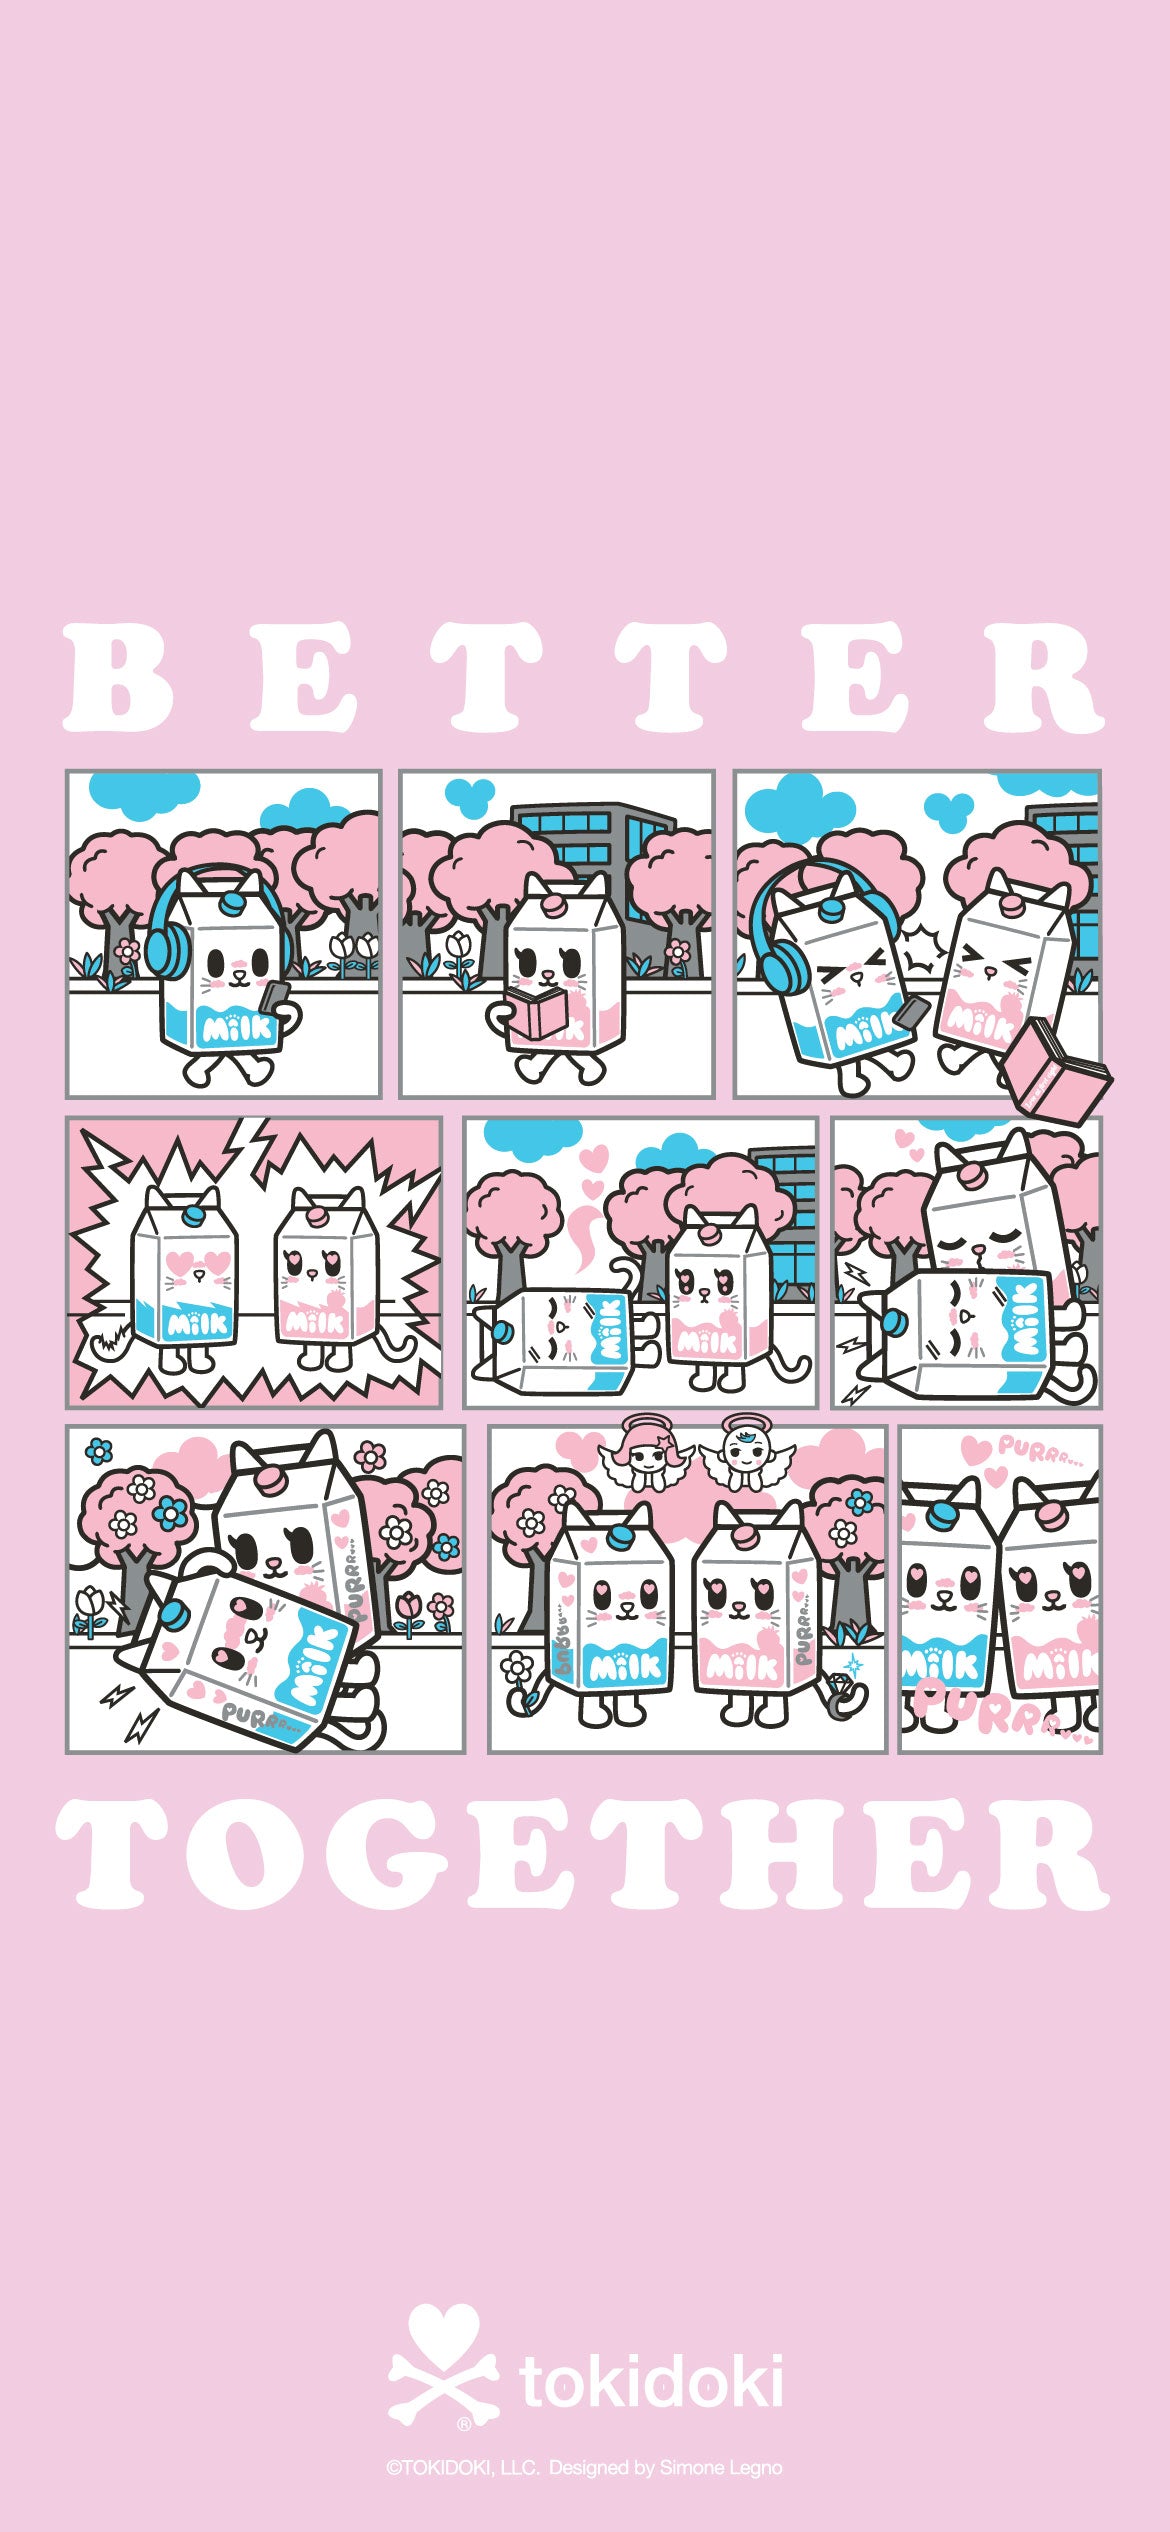 Tokidoki art brand cartoon HD phone wallpaper  Peakpx